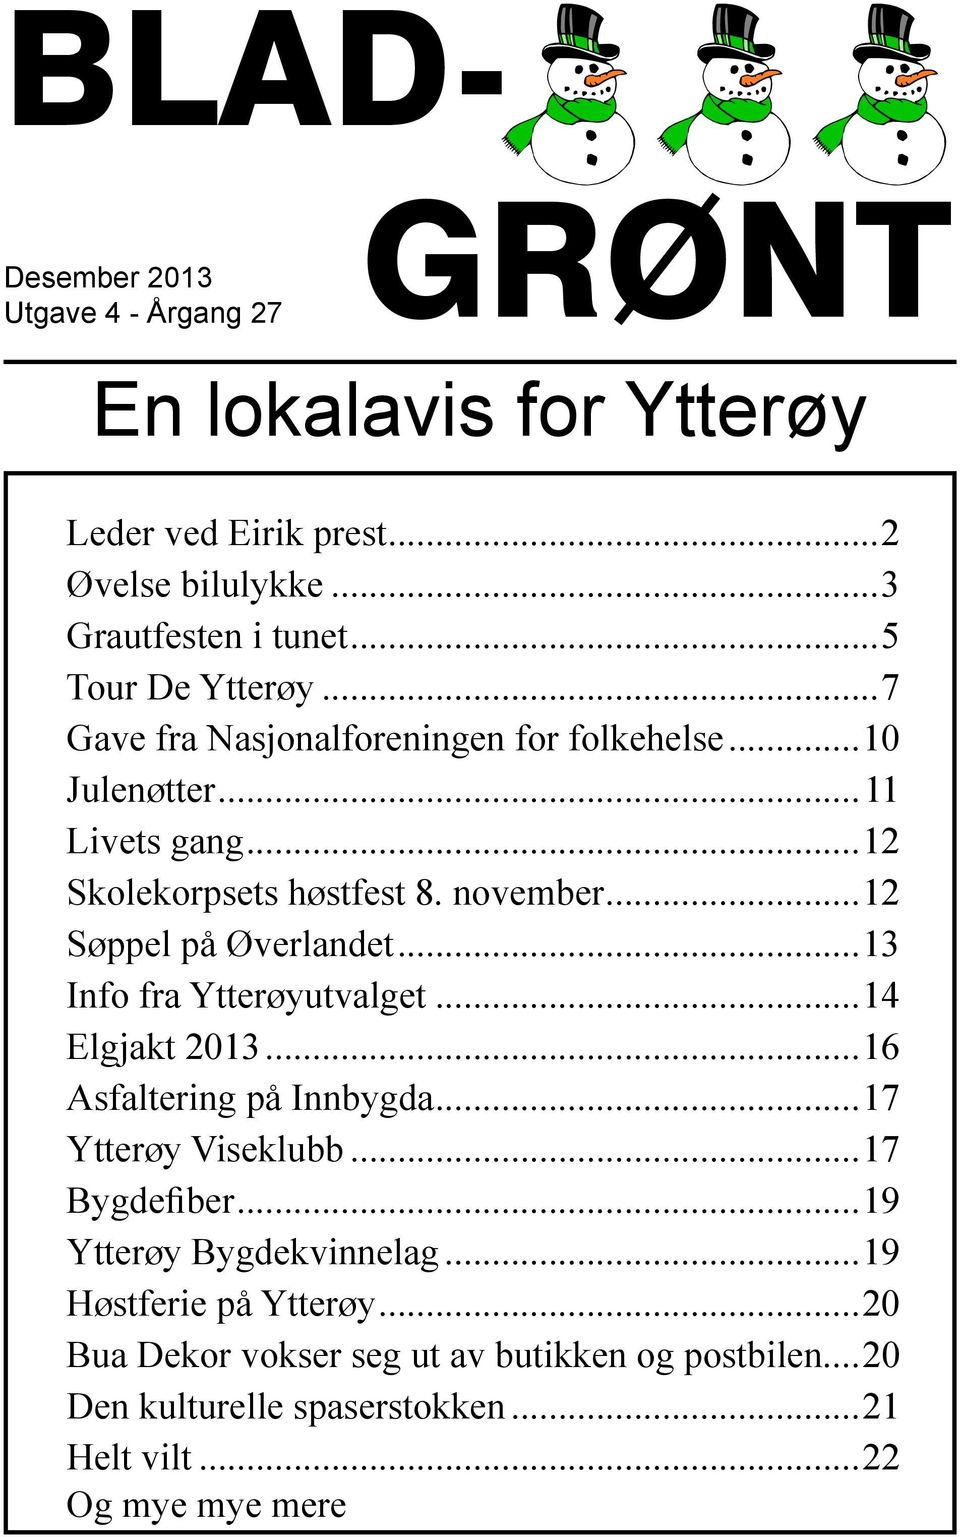 ..12 Søppel på Øverlandet...13 Info fra Ytterøyutvalget...14 Elgjakt 2013...16 Asfaltering på Innbygda...17 Ytterøy Viseklubb...17 Bygdefiber.